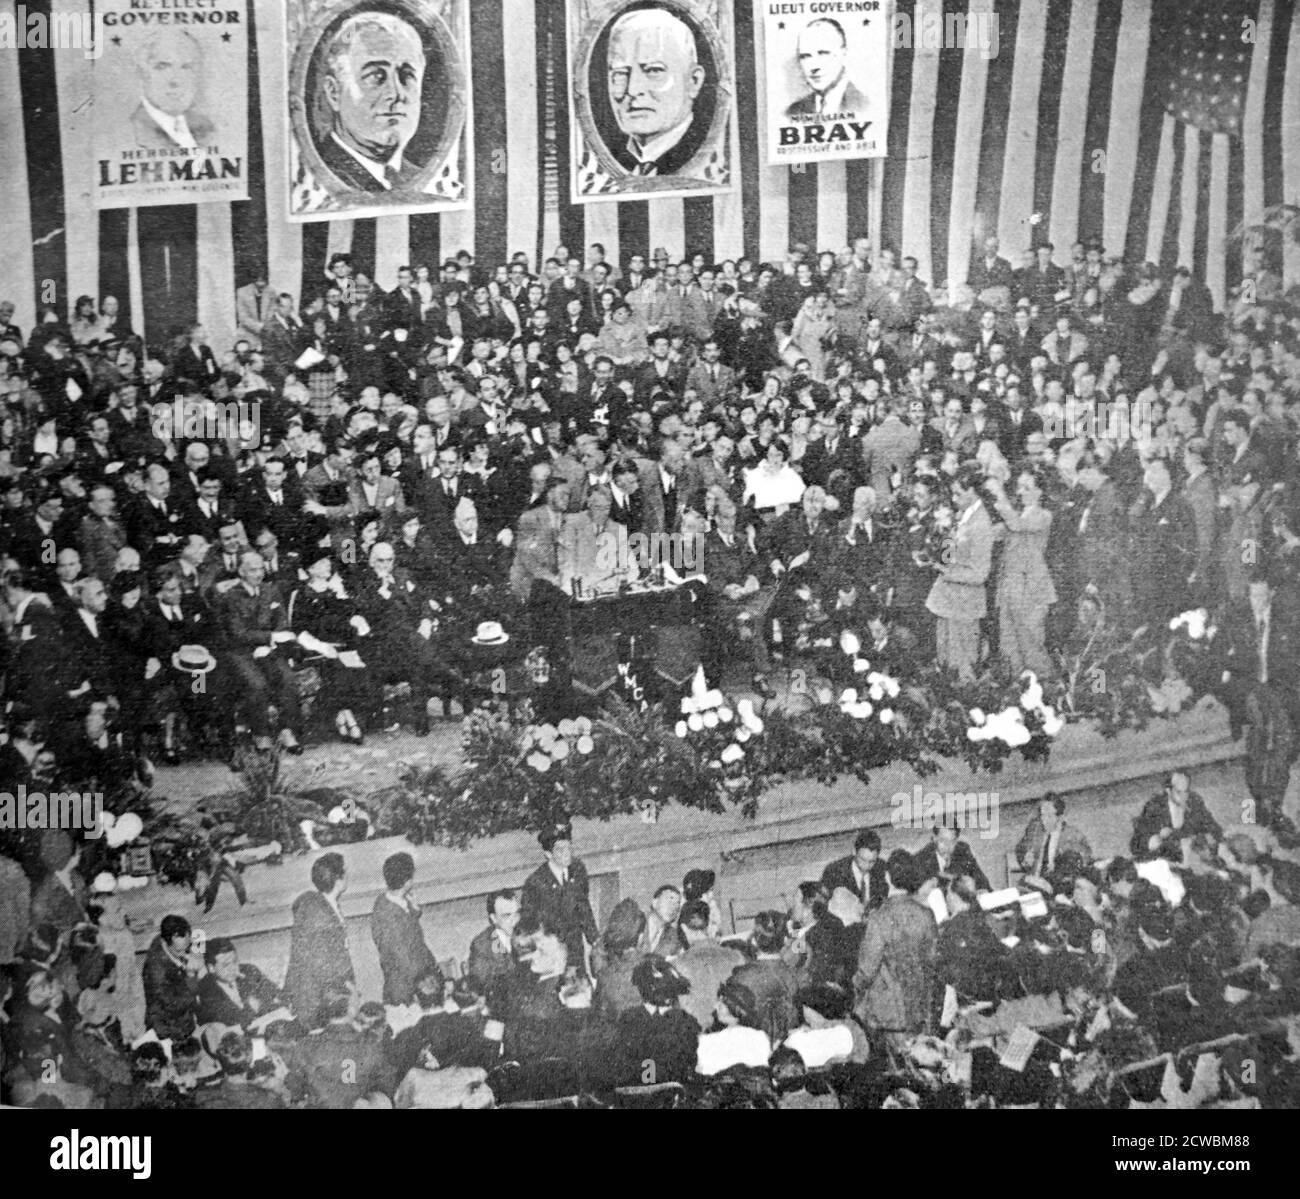 Schwarz-Weiß-Foto des US-Präsidenten Franklin D. Roosevelt (1882-1945), der während eines Wahlkampfes an der Academy of Music in Brooklyn eine Rede hielt. Stockfoto